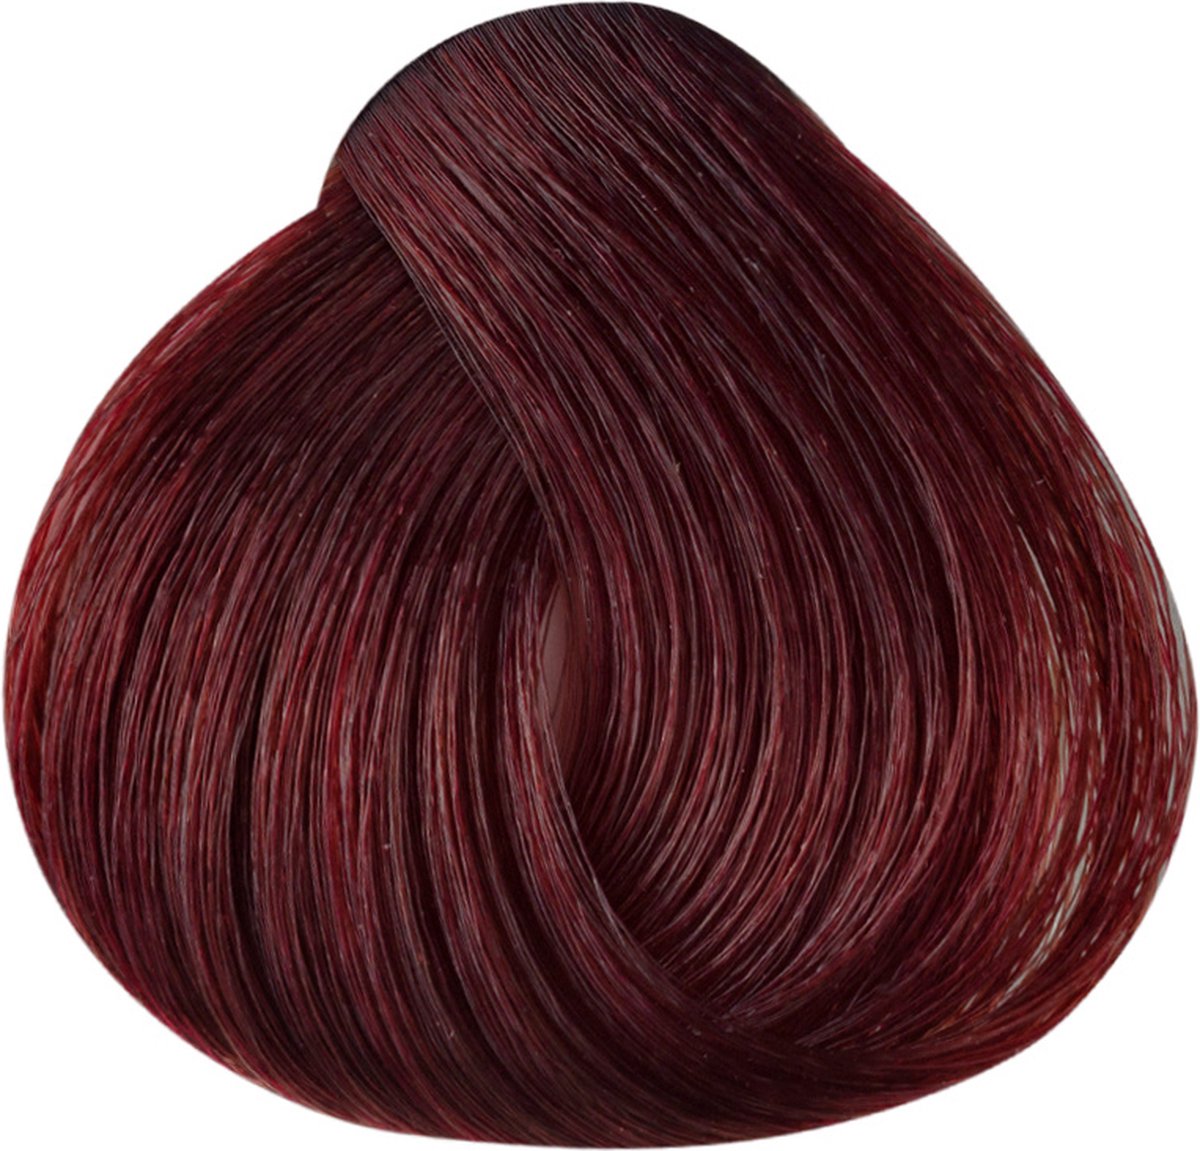 Imperity Singularity Haarverf 6.66 - Intensief Rood Donkerblond - 100ml - Permanente Haarverf